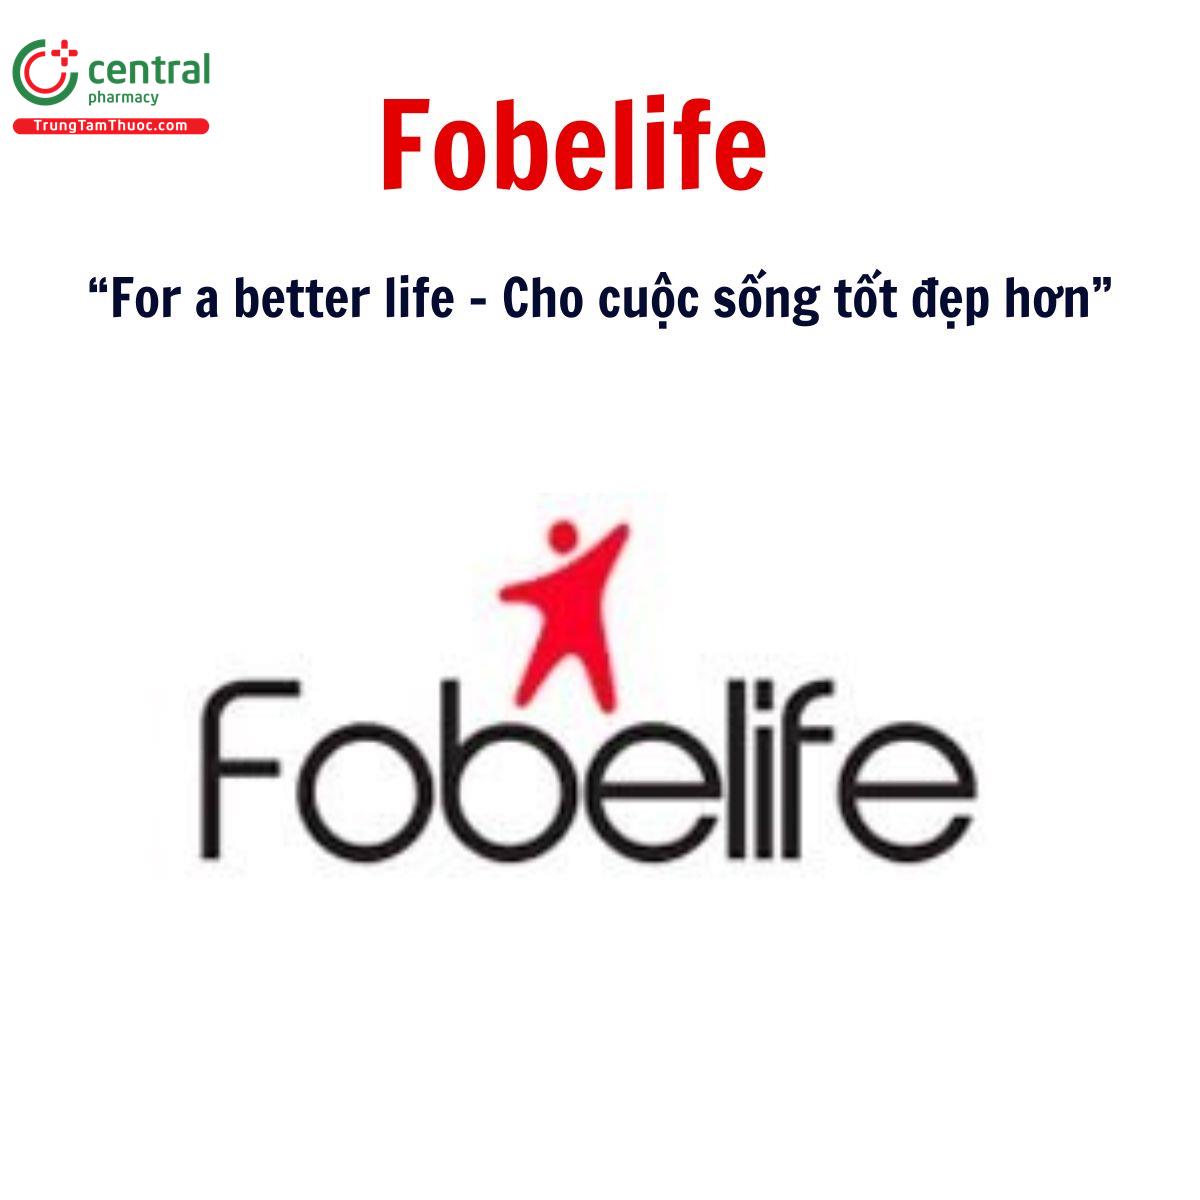  Fobelife